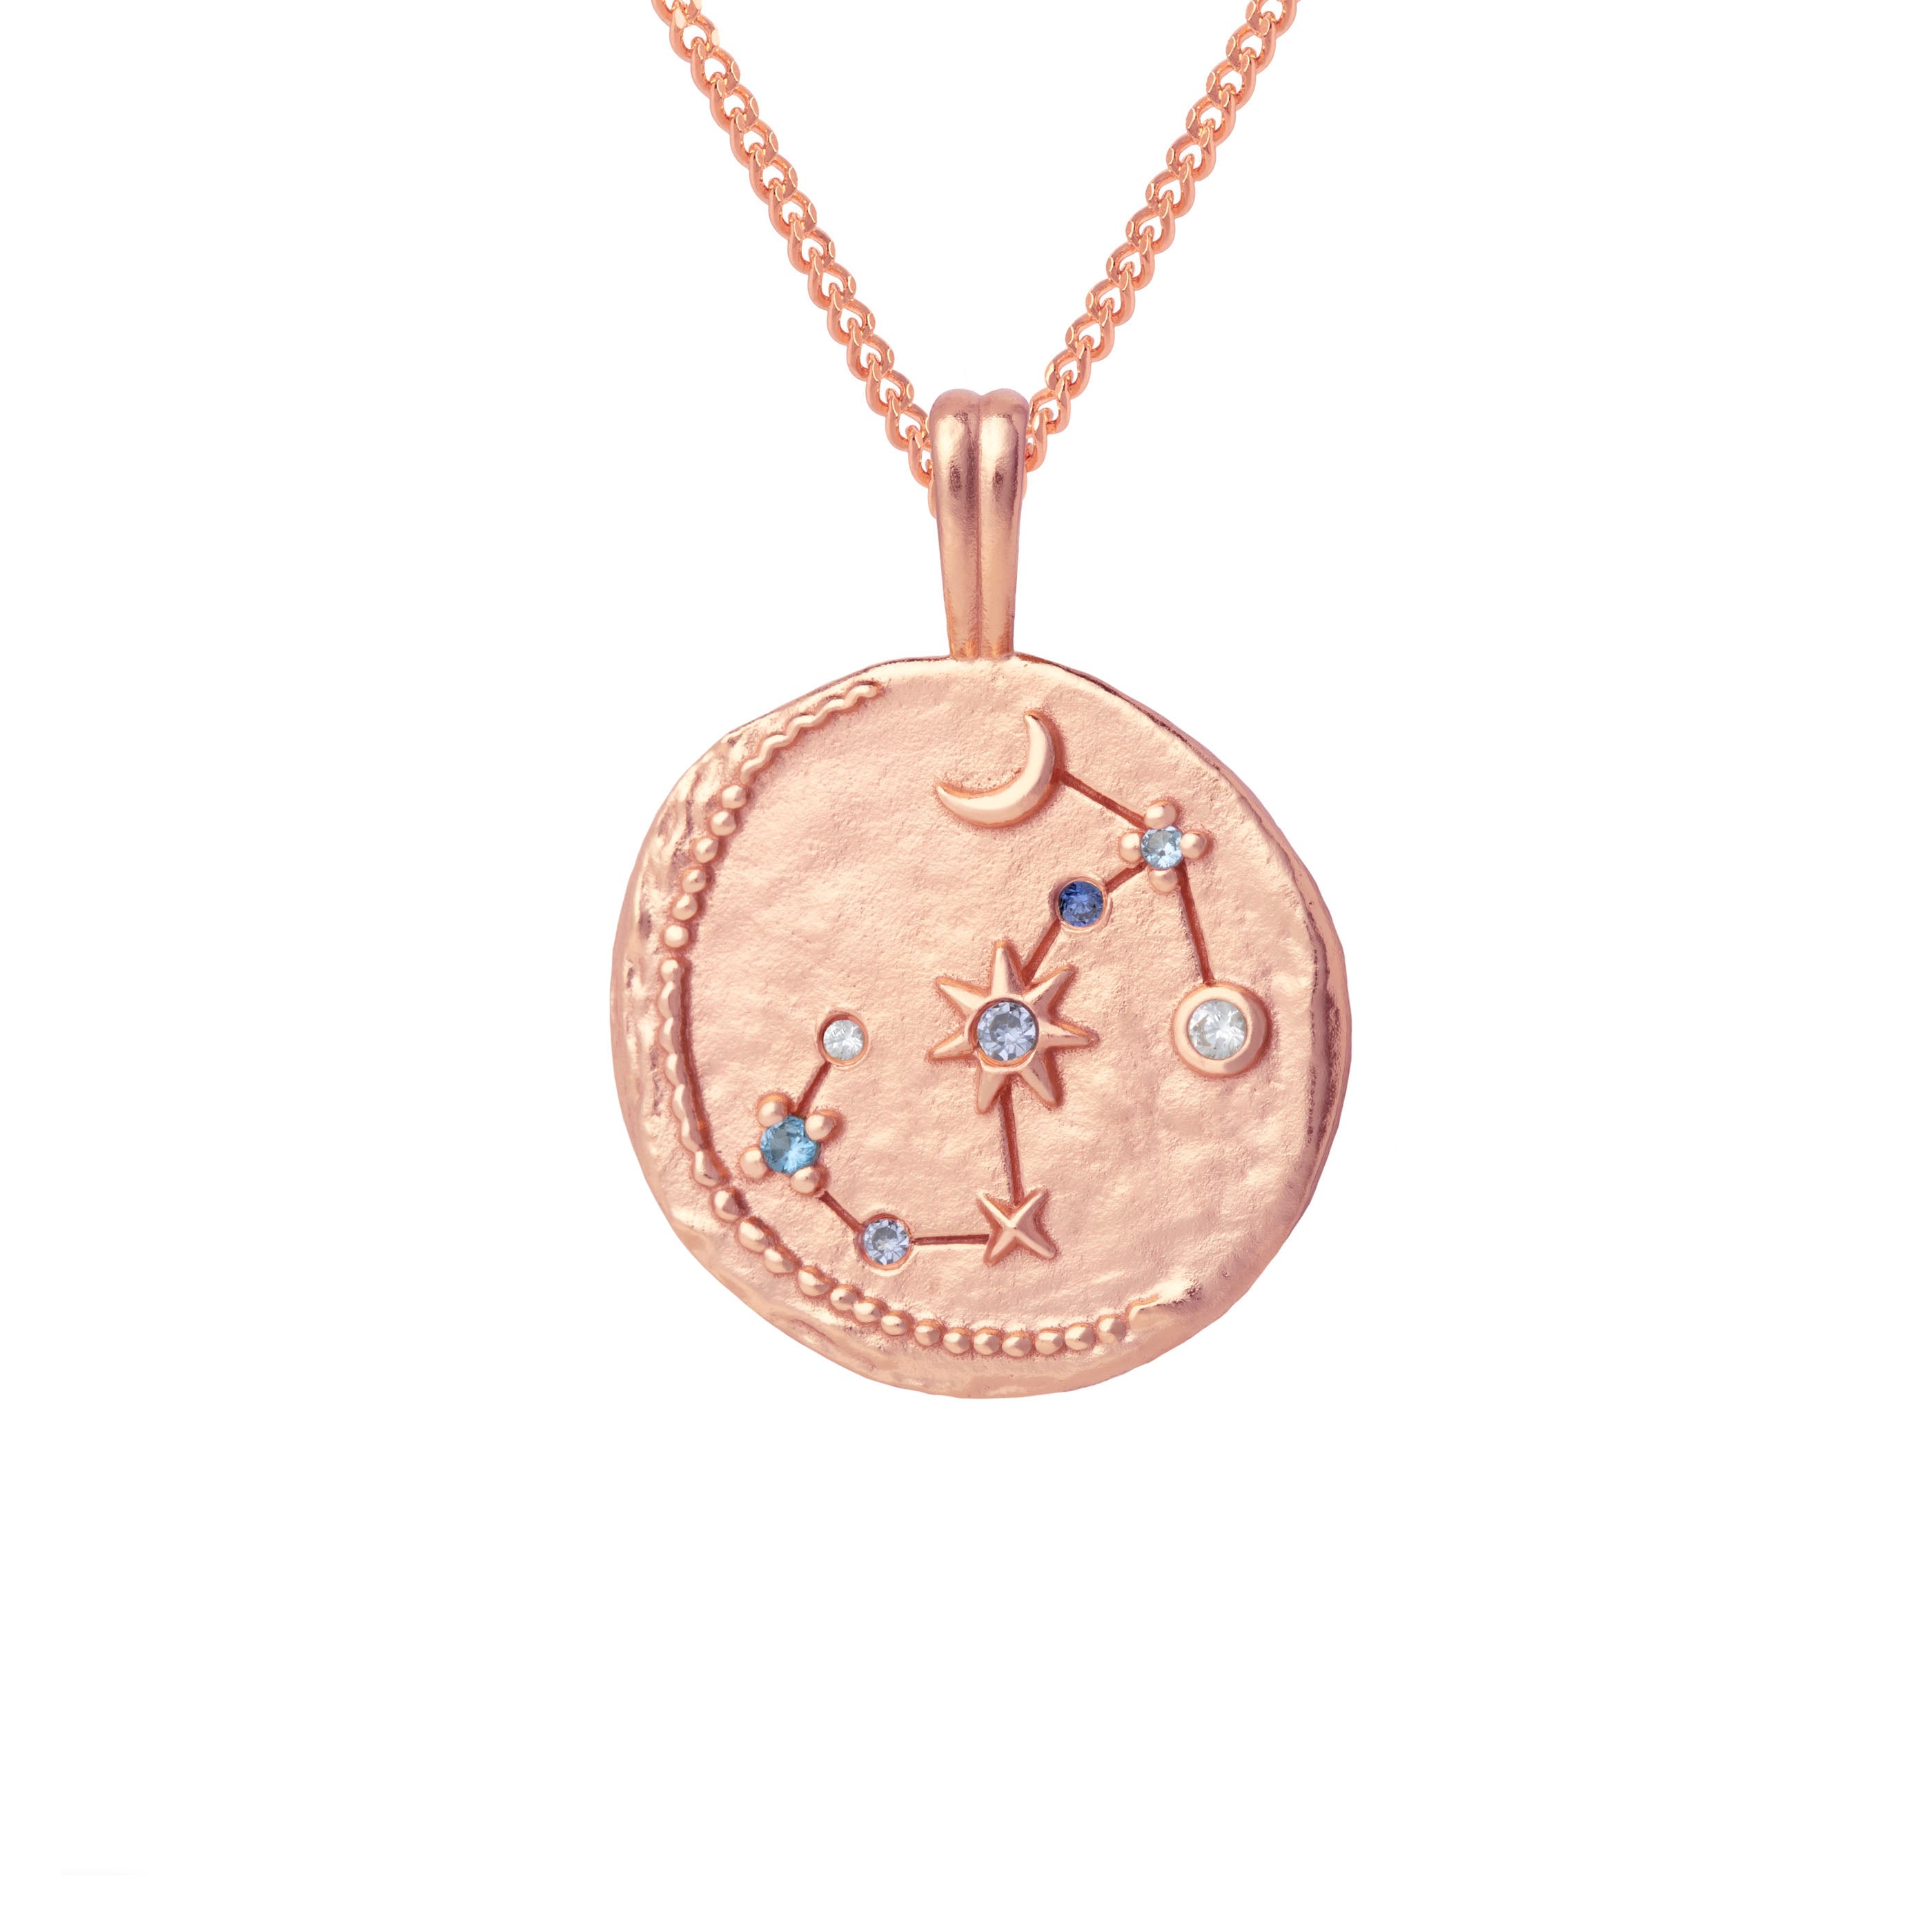 Scorpio Zodiac Pendant Necklace in Rose Gold